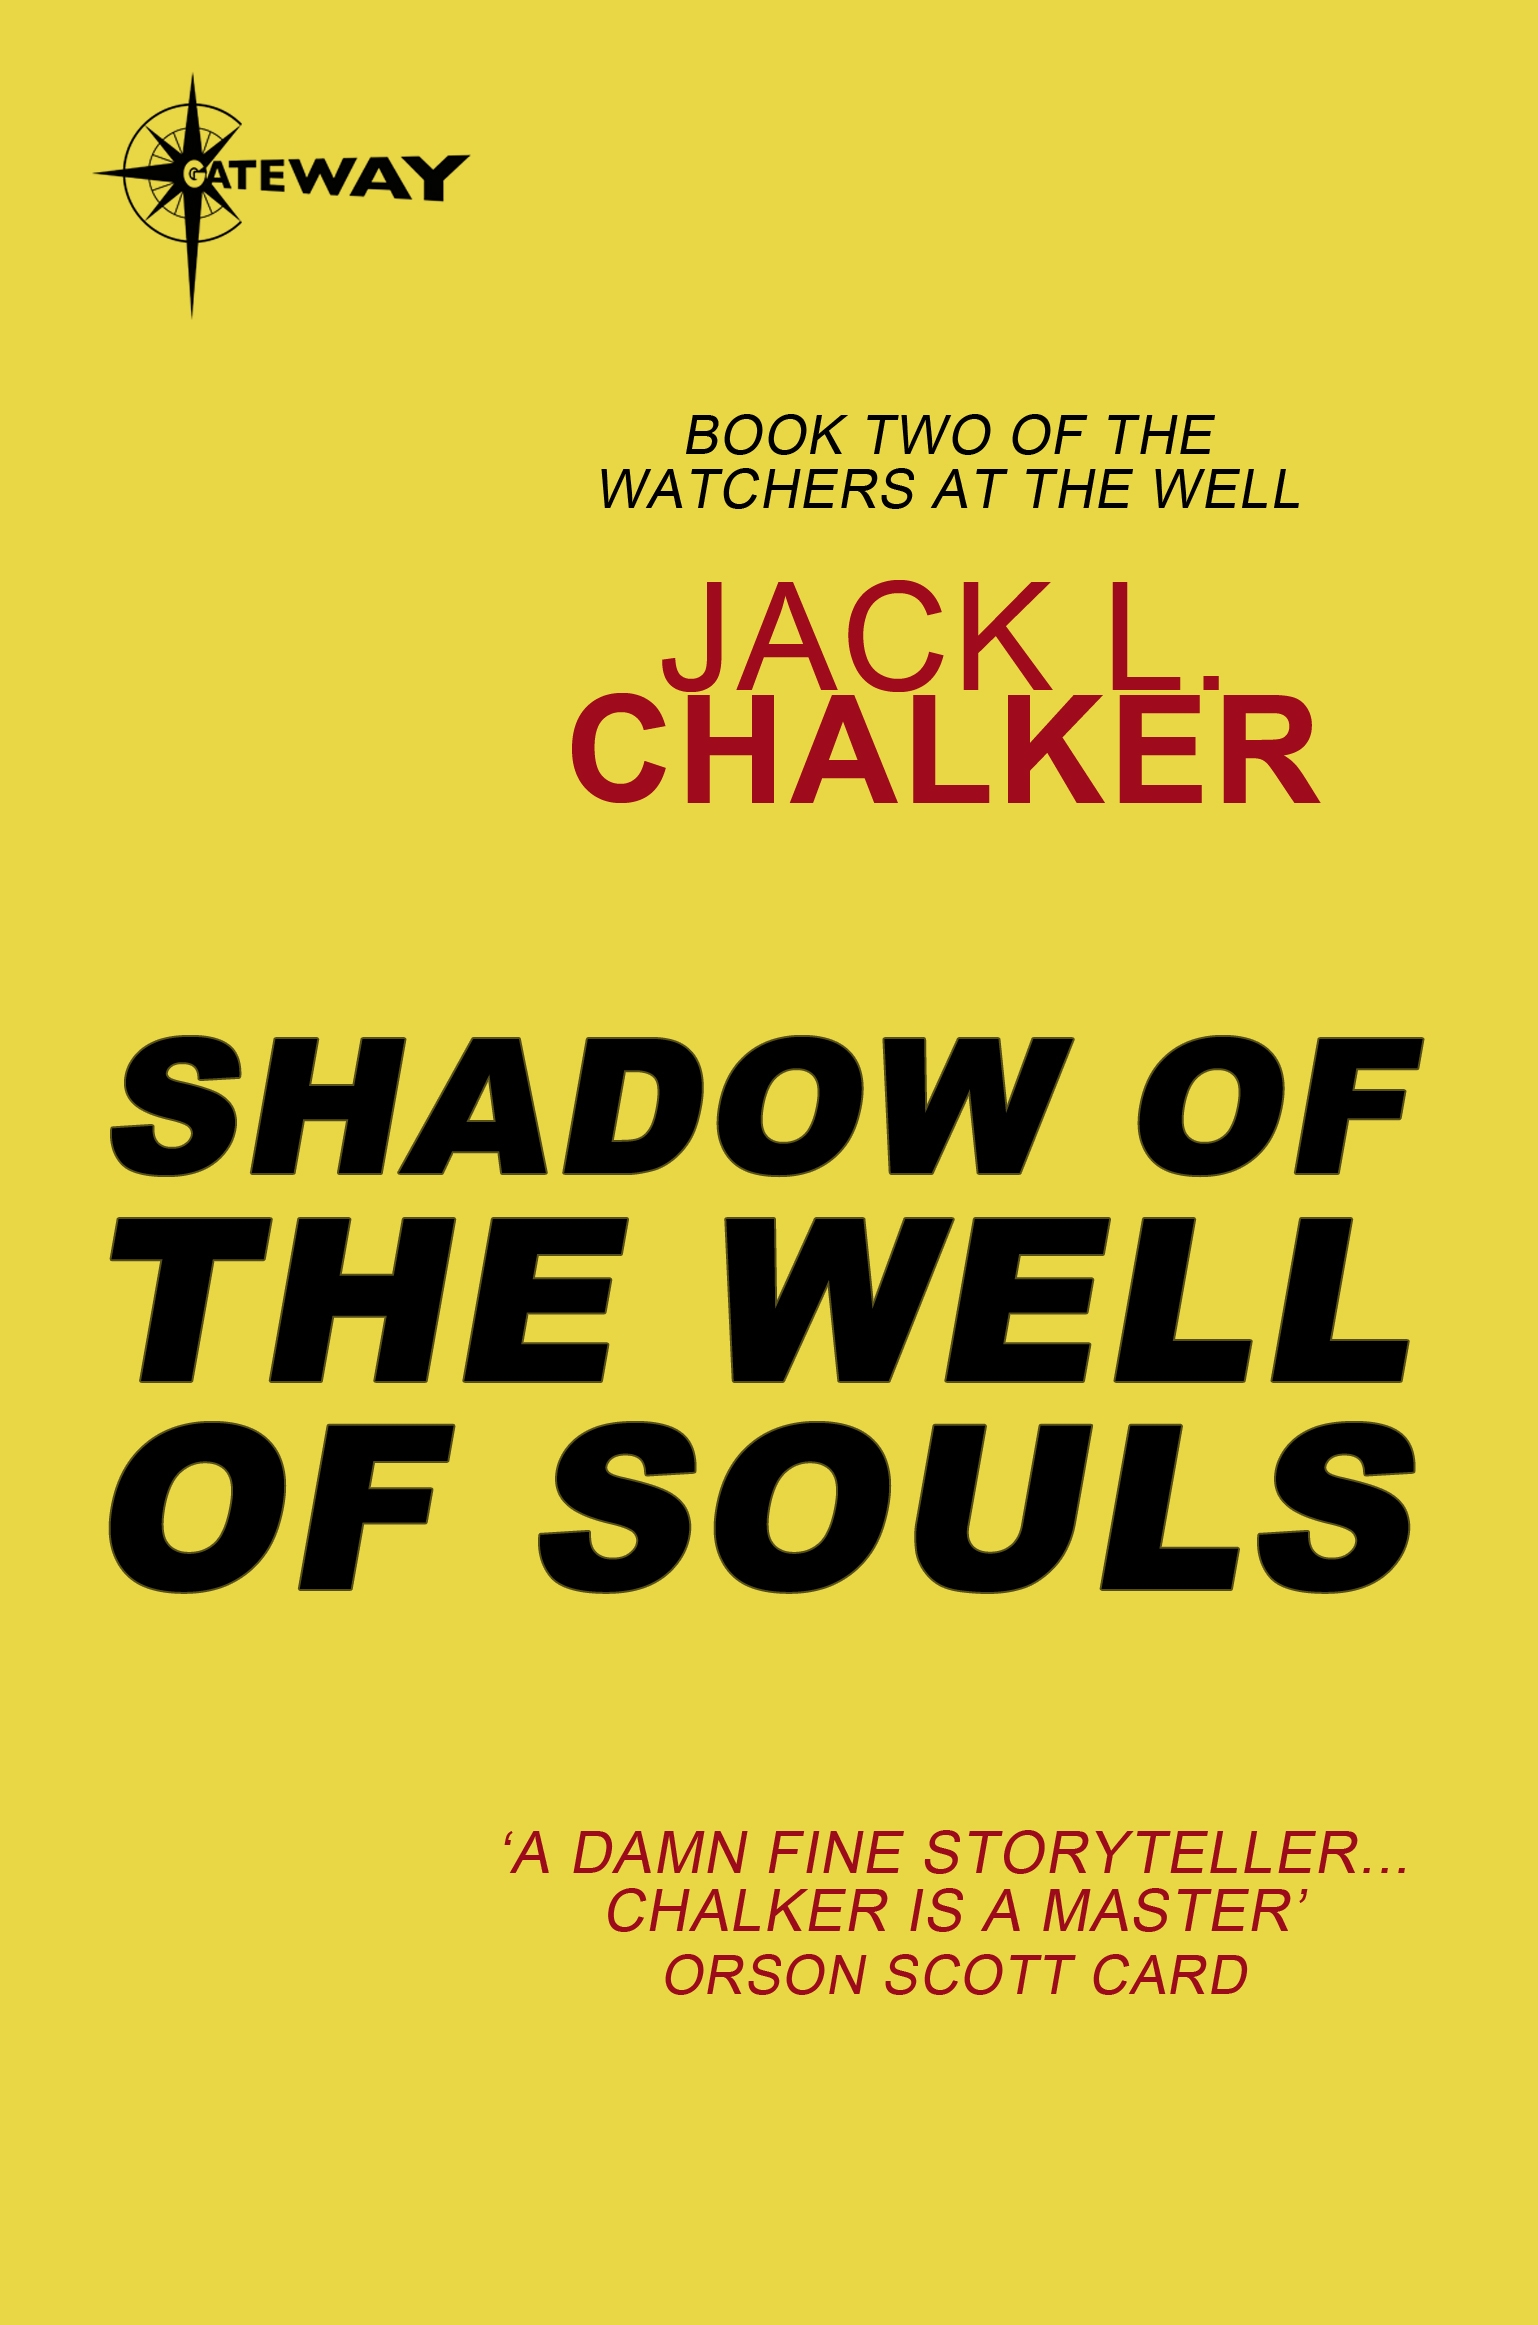 well of souls chalker